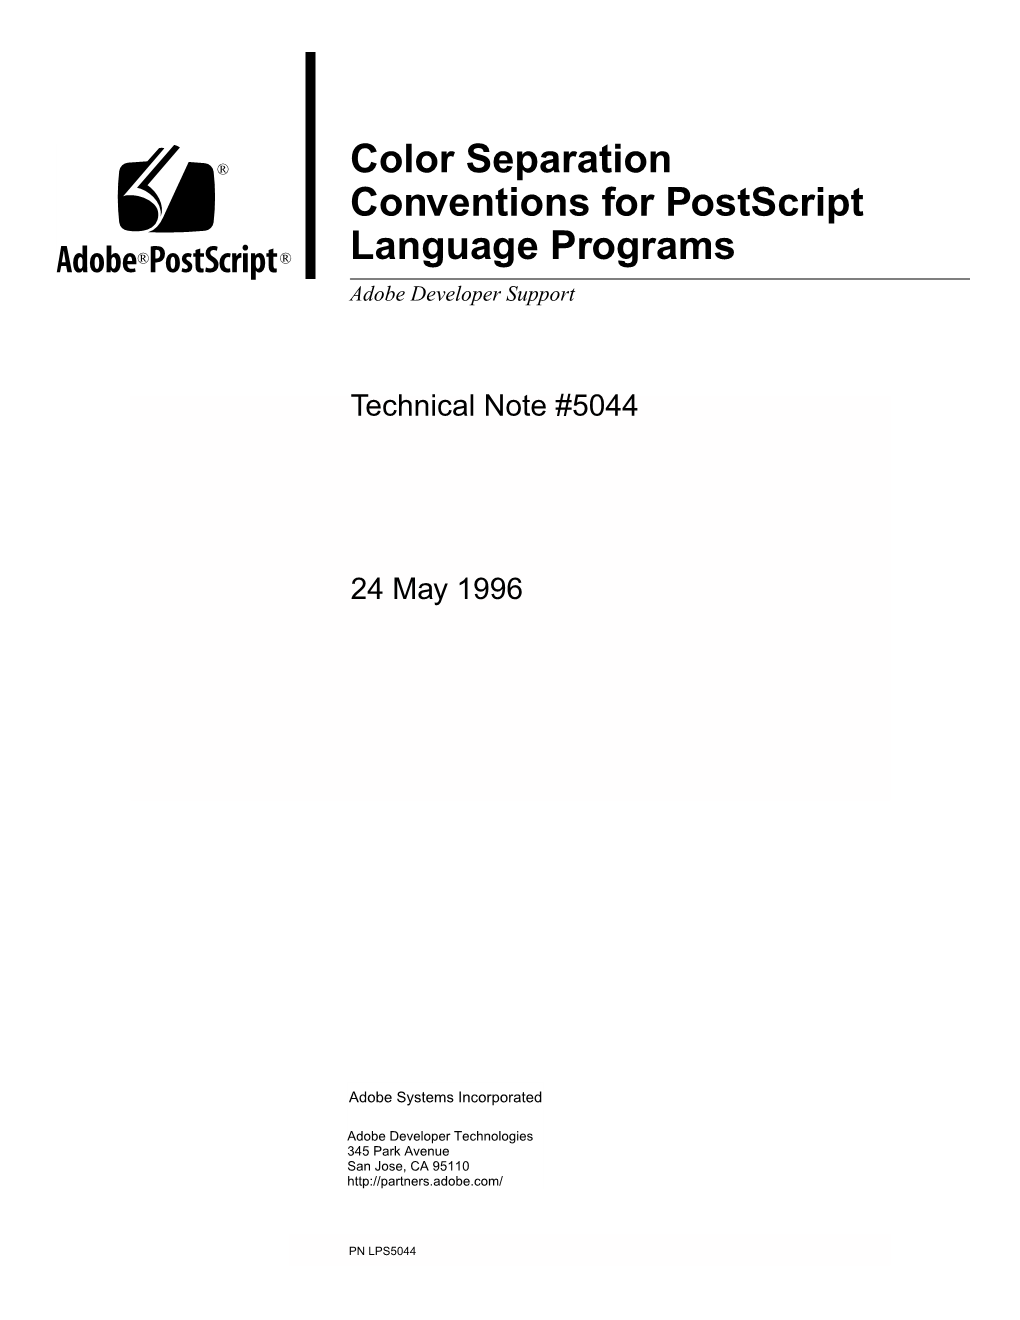 Color Separation Conventions for Postscript Language Programs